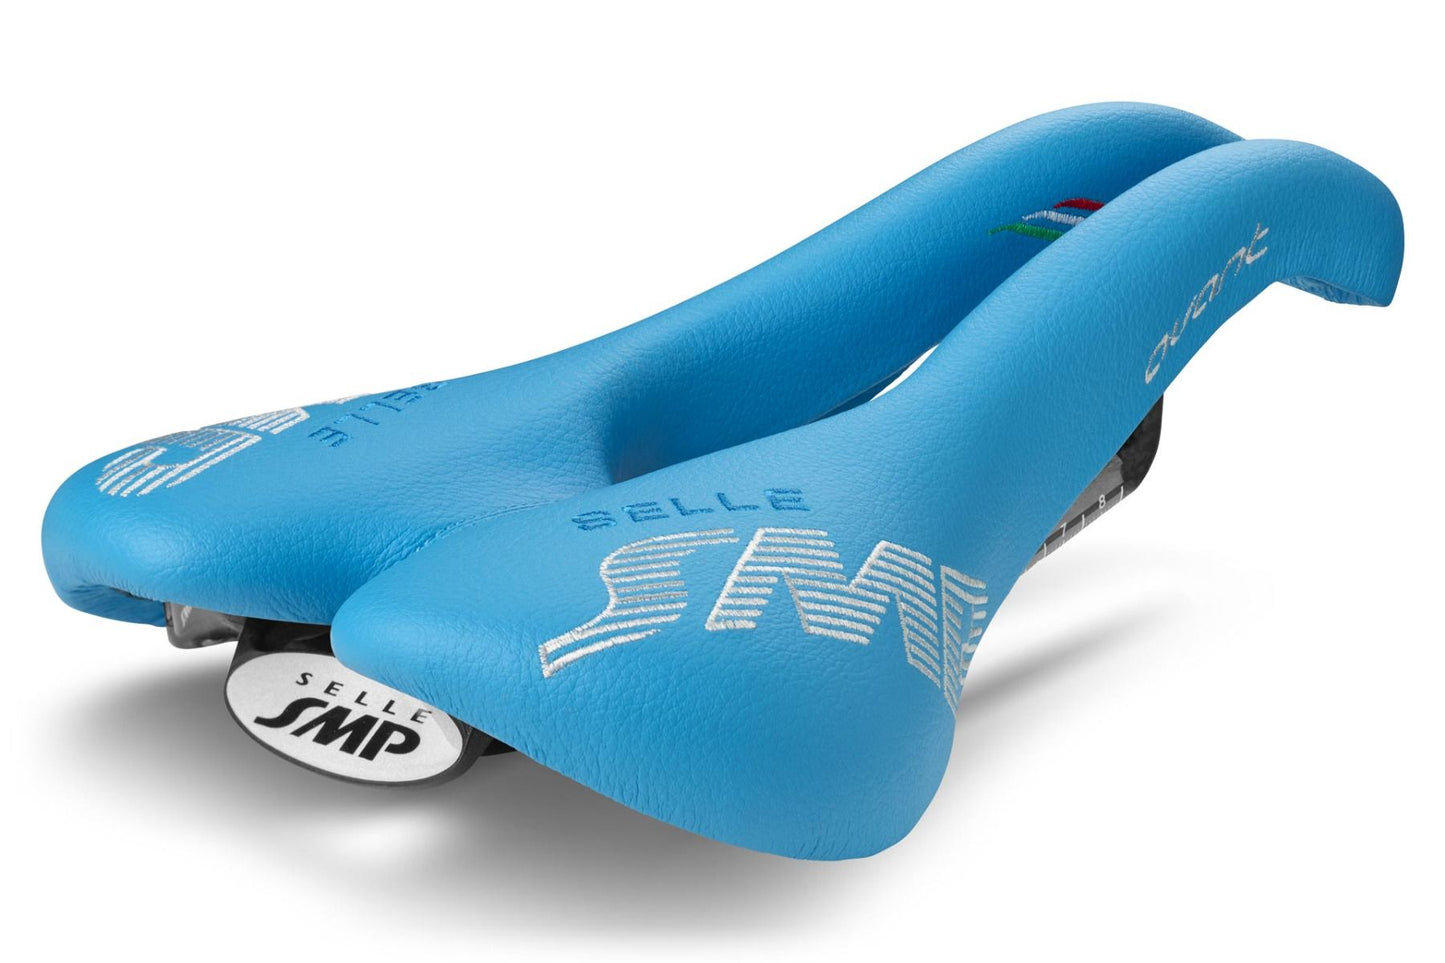 Selle SMP Avant Saddle with Carbon Rails (Light Blue)